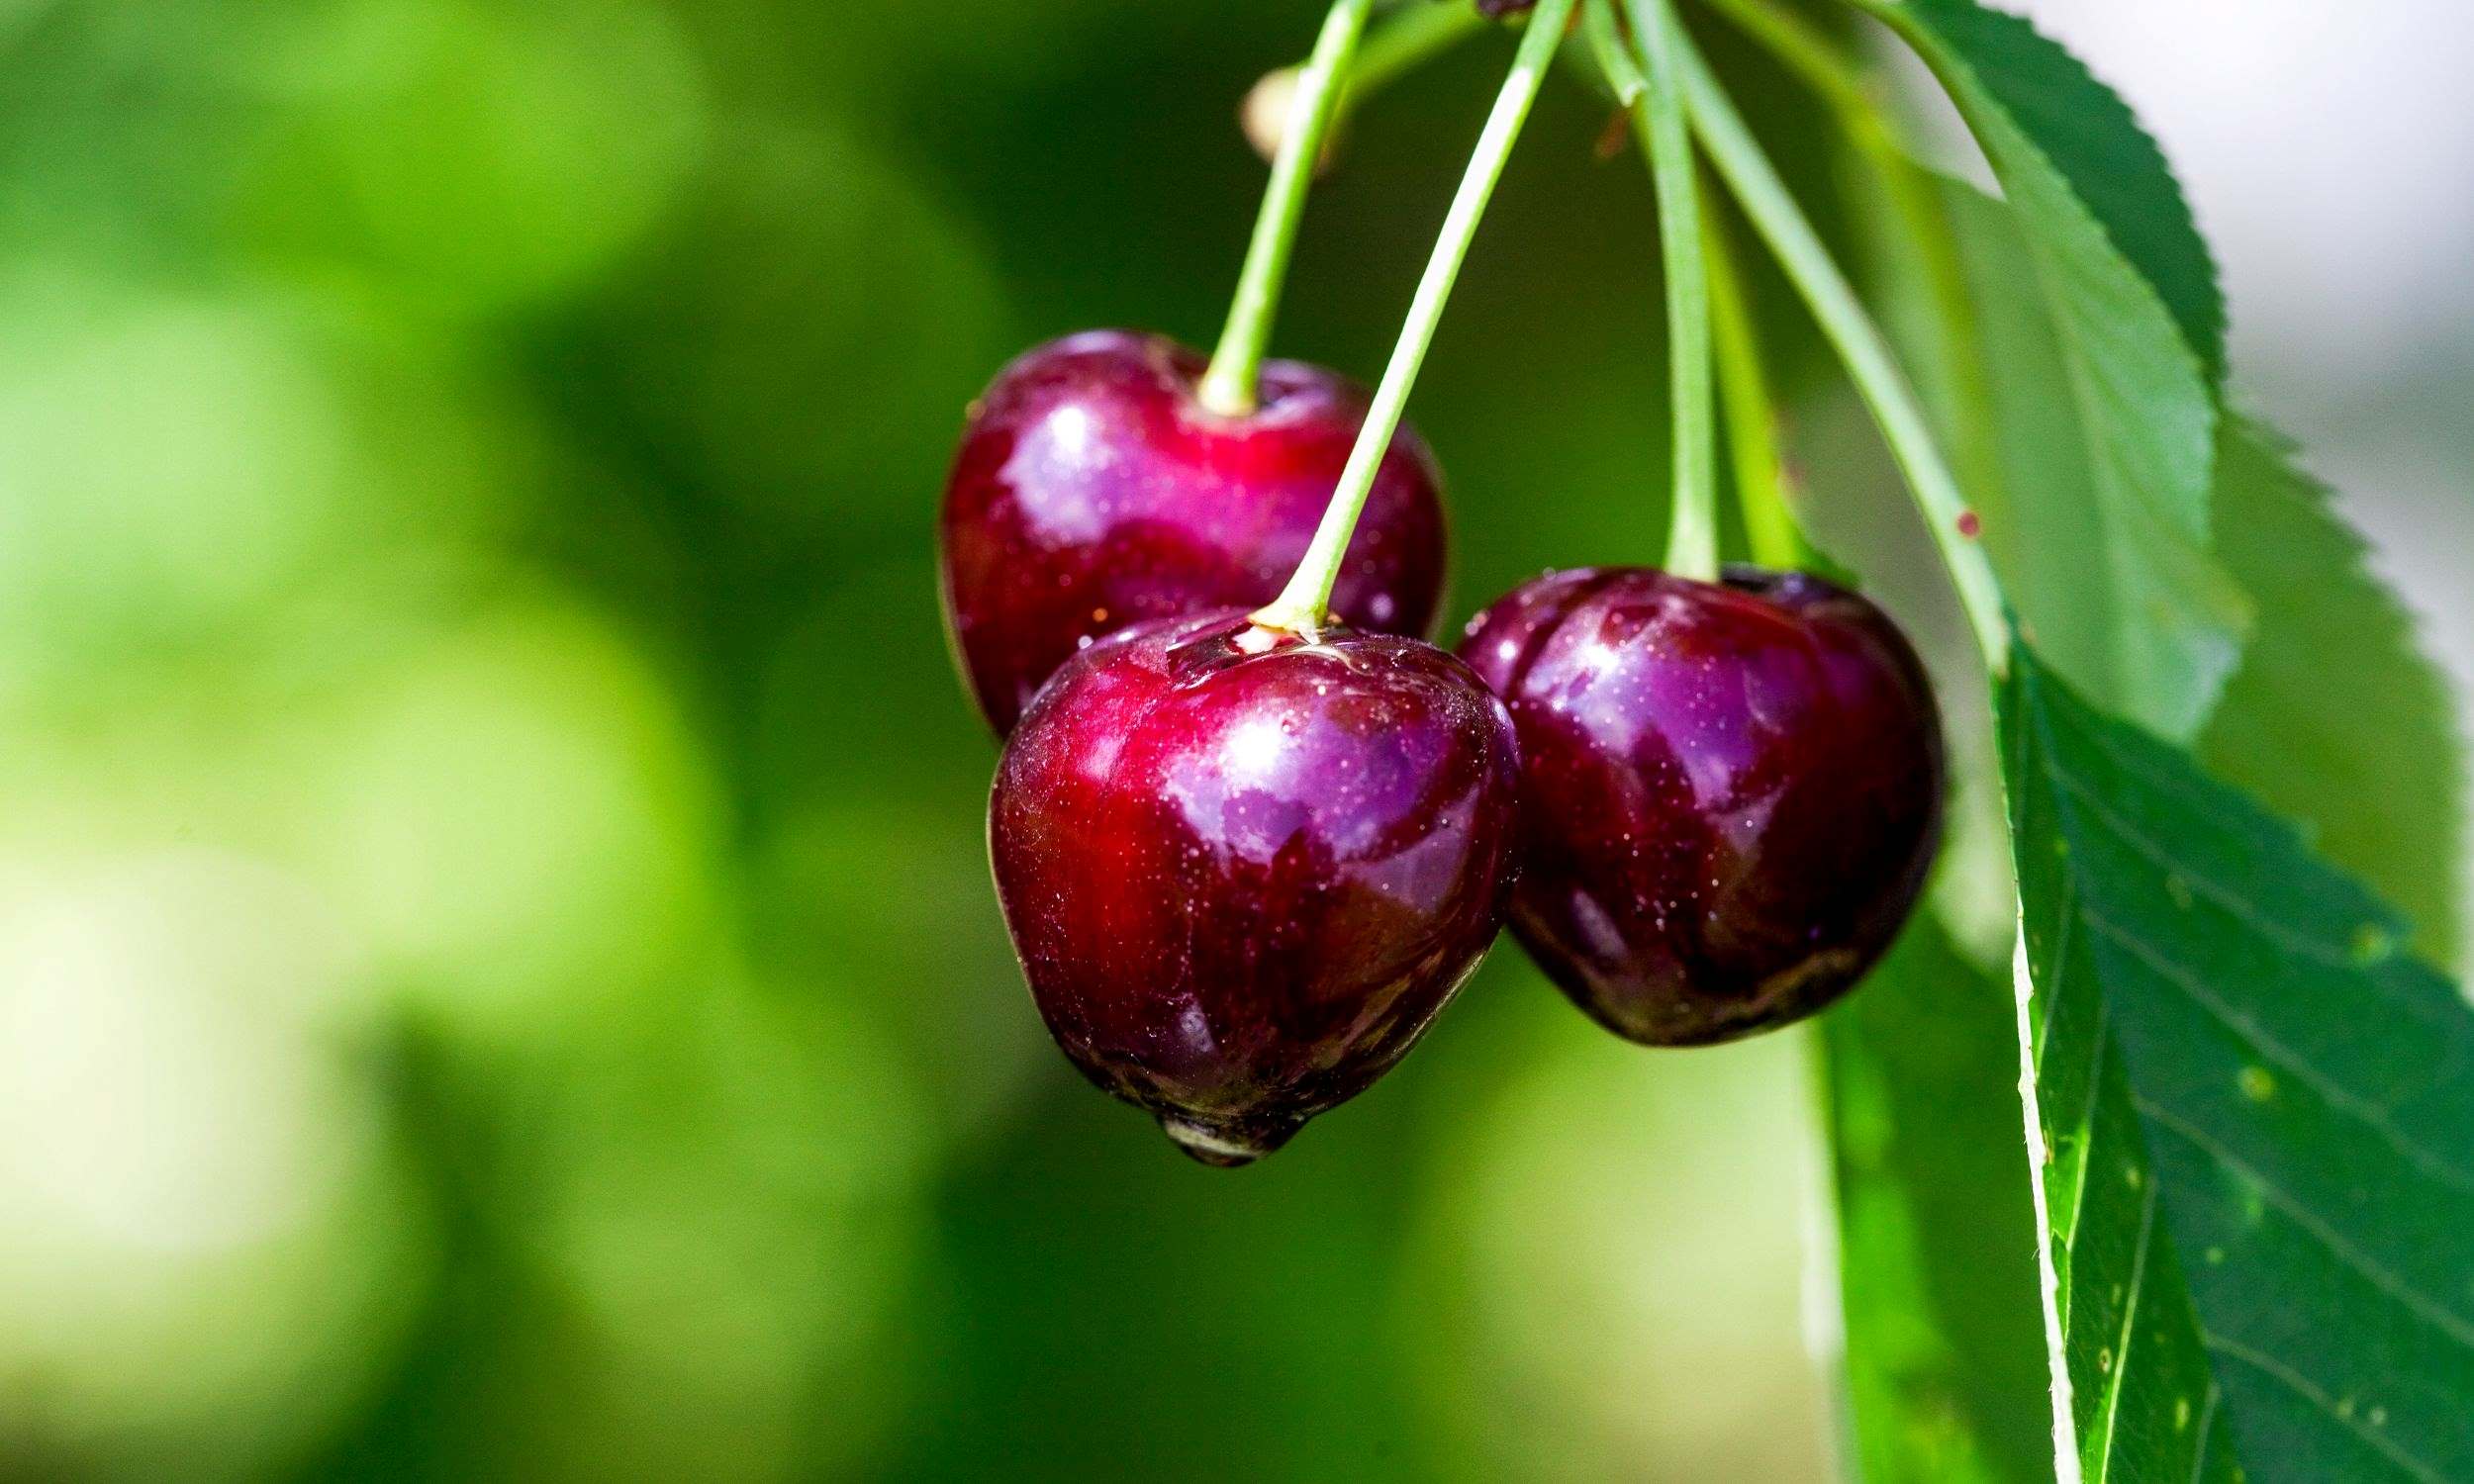 How Do You Plant Cherry Seeds